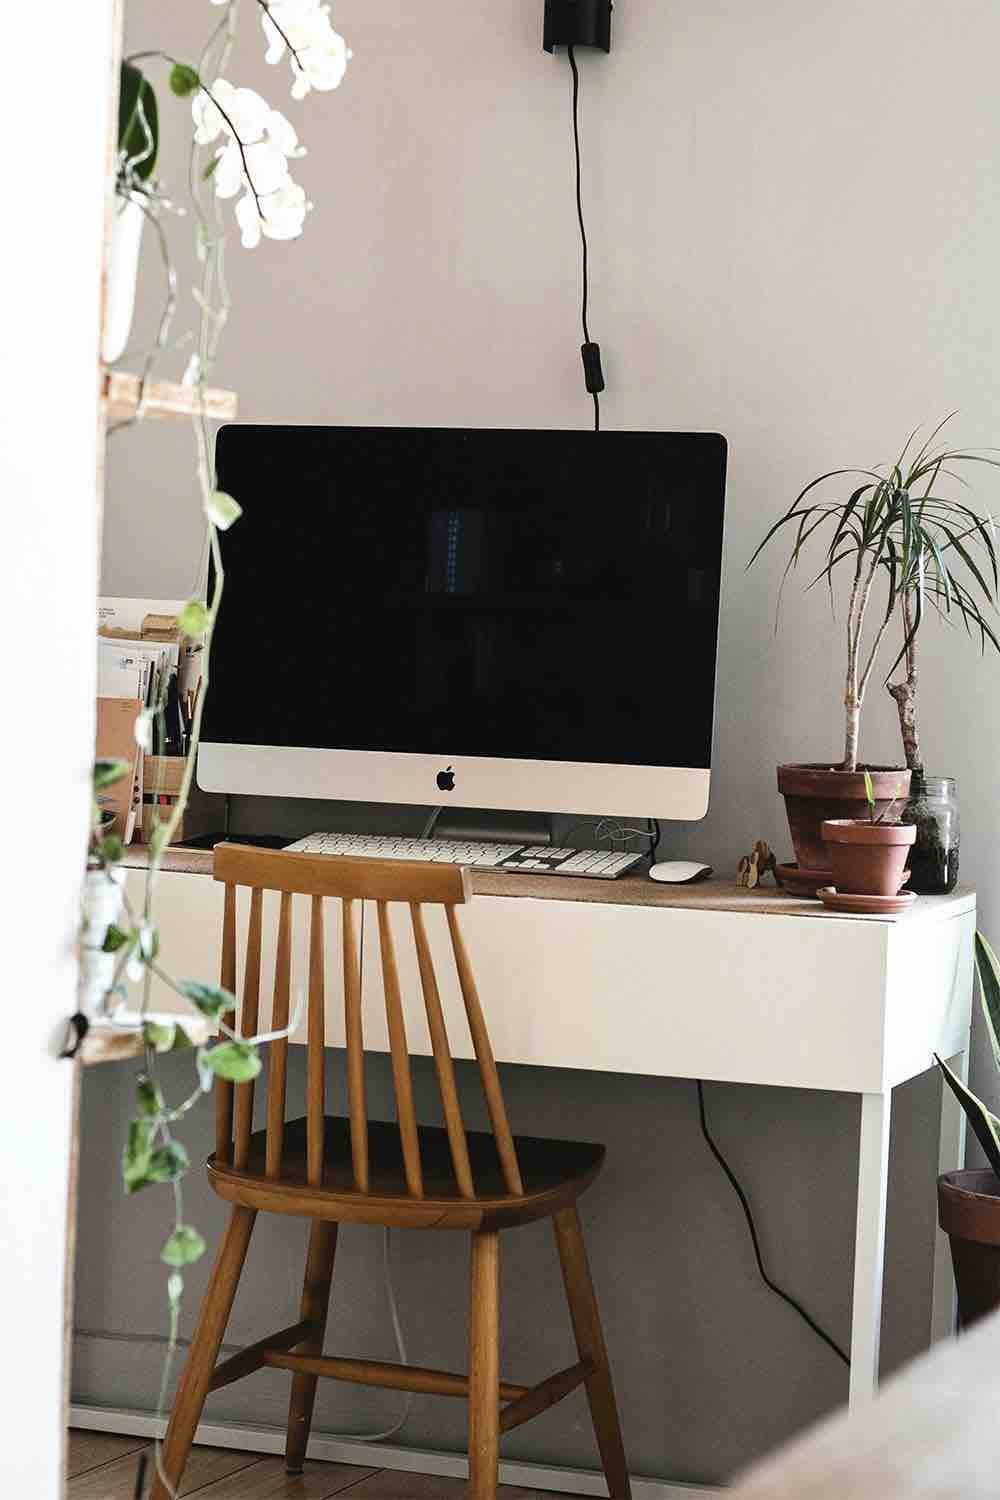 Image décorative représentant un ordinateur fixe posé sur un bureau, et plusieurs plantes d’intérieur.